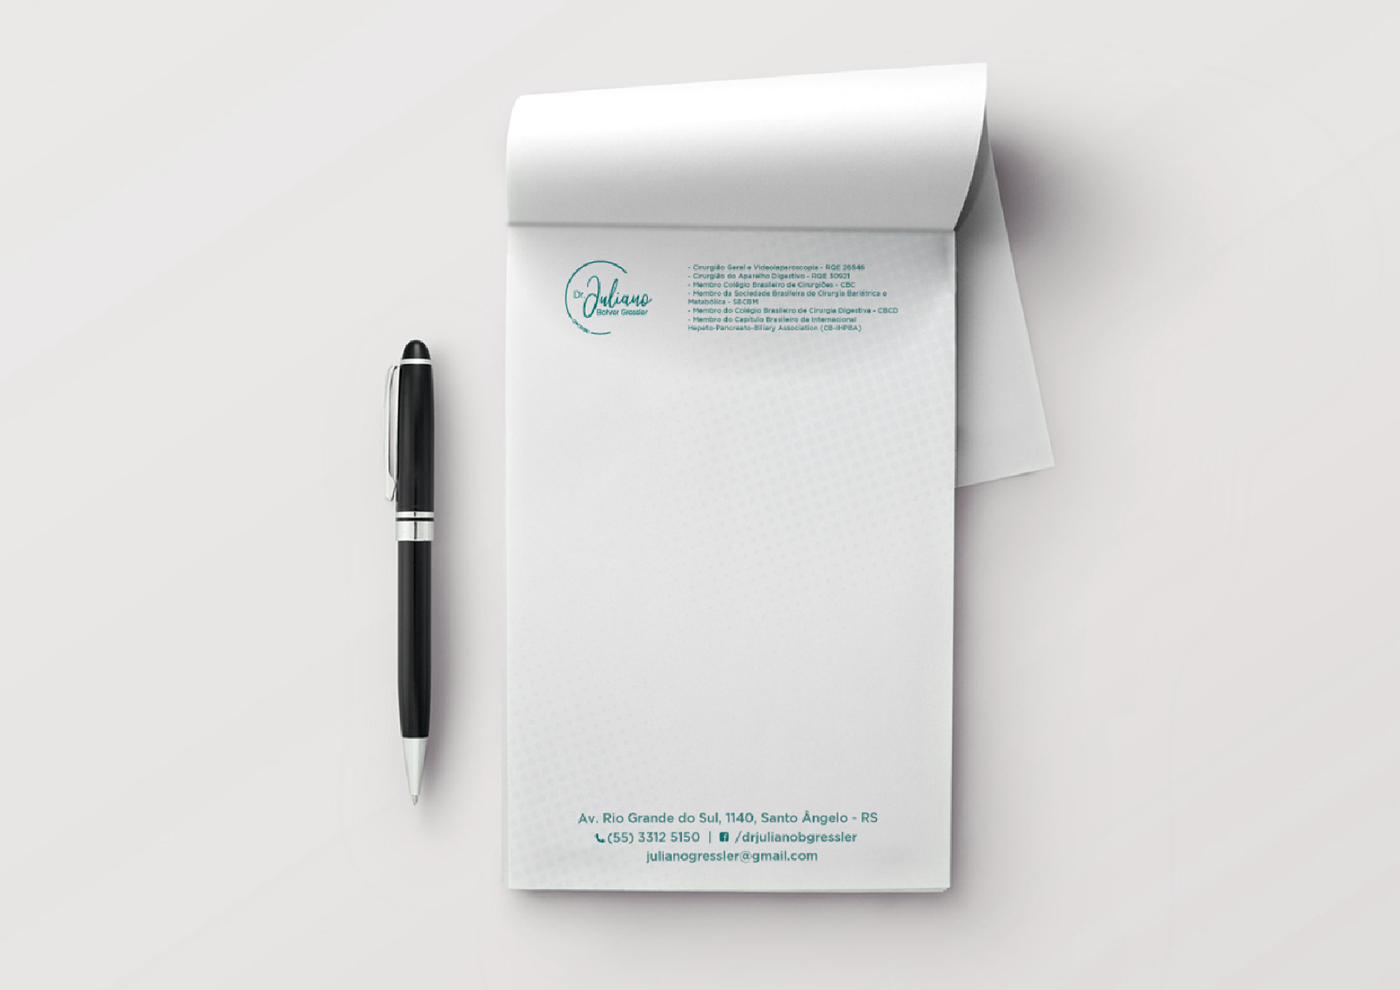 medicina brand design gráfico Mockup marca papelaria assinatura CRM medico receituário